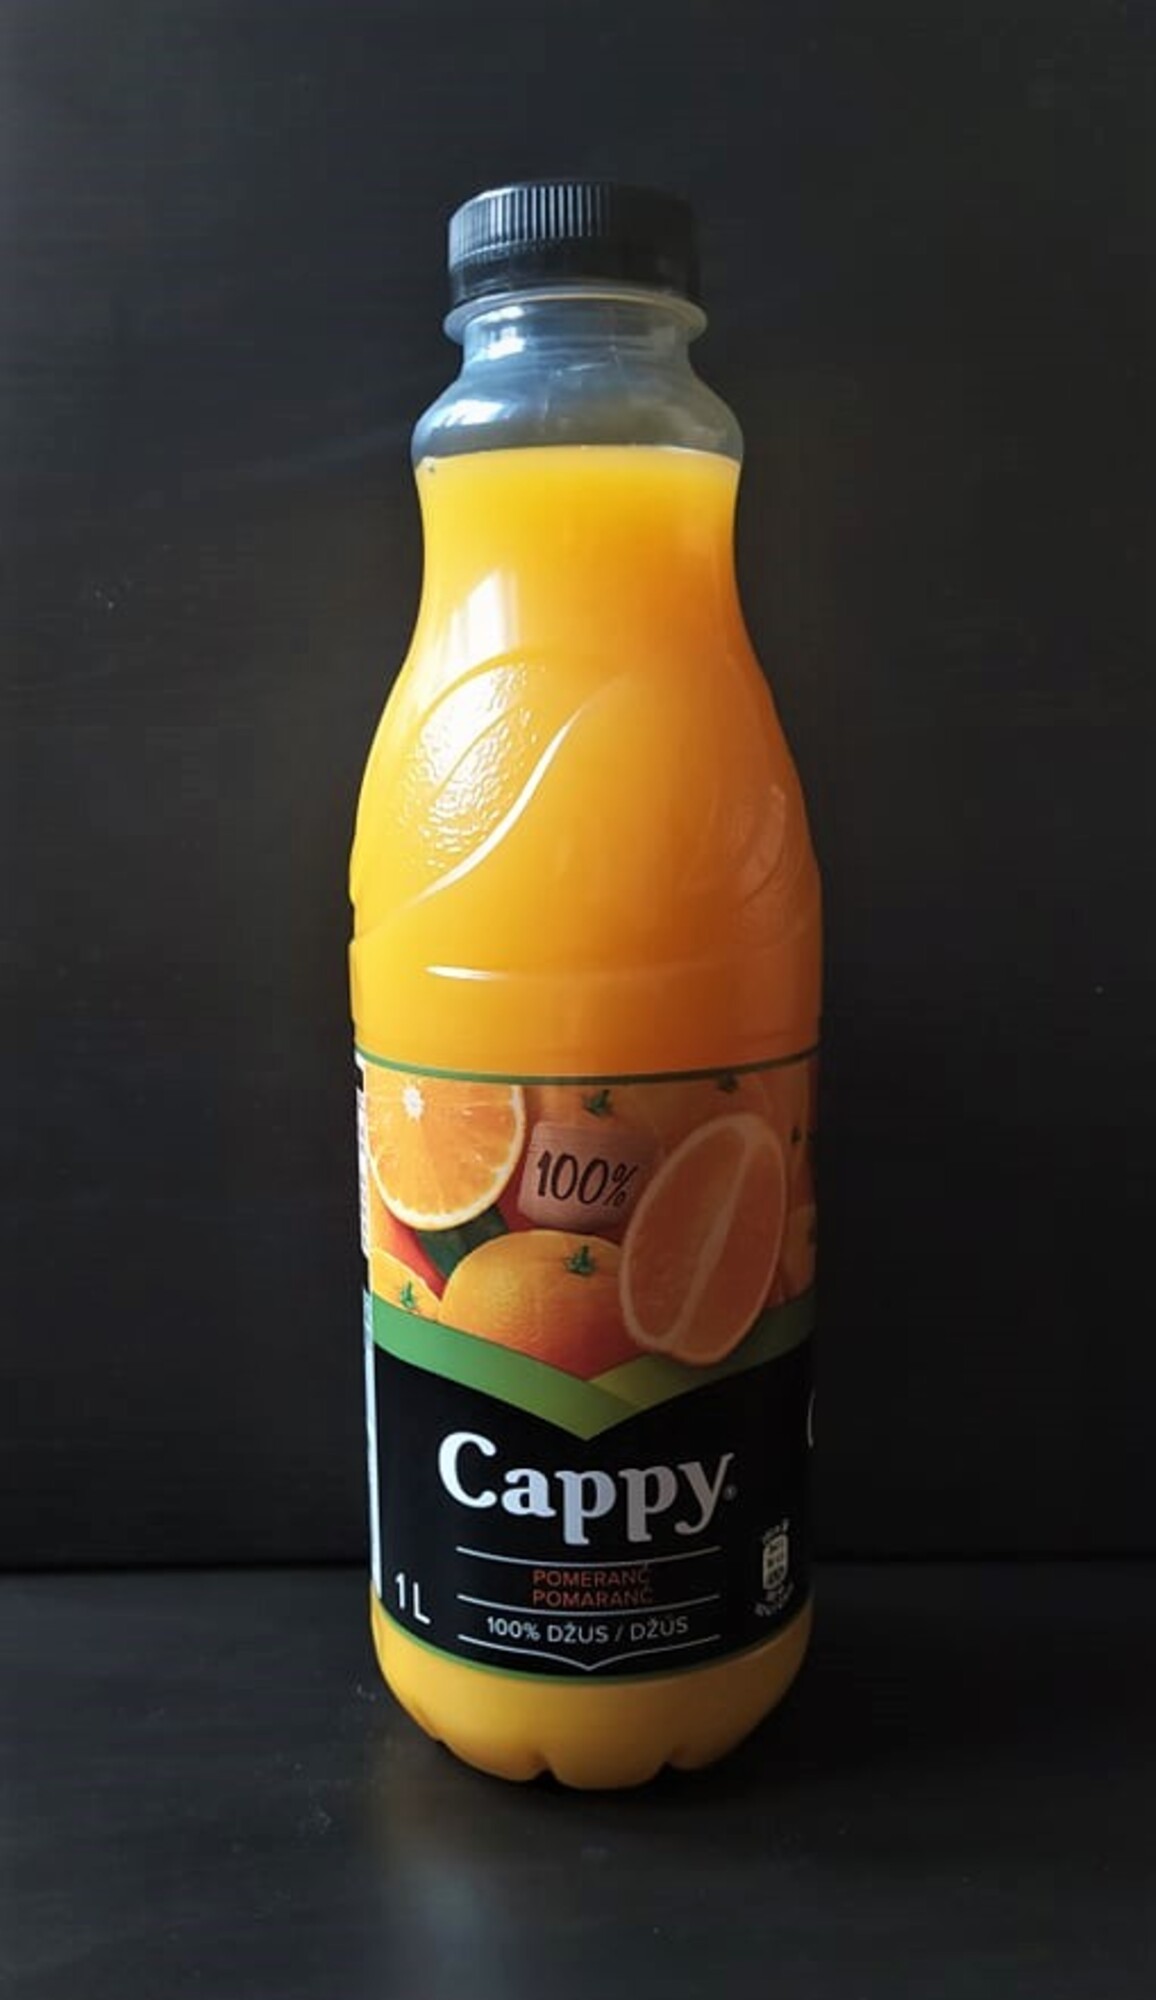 džusy pomeranč 2020 test cappy